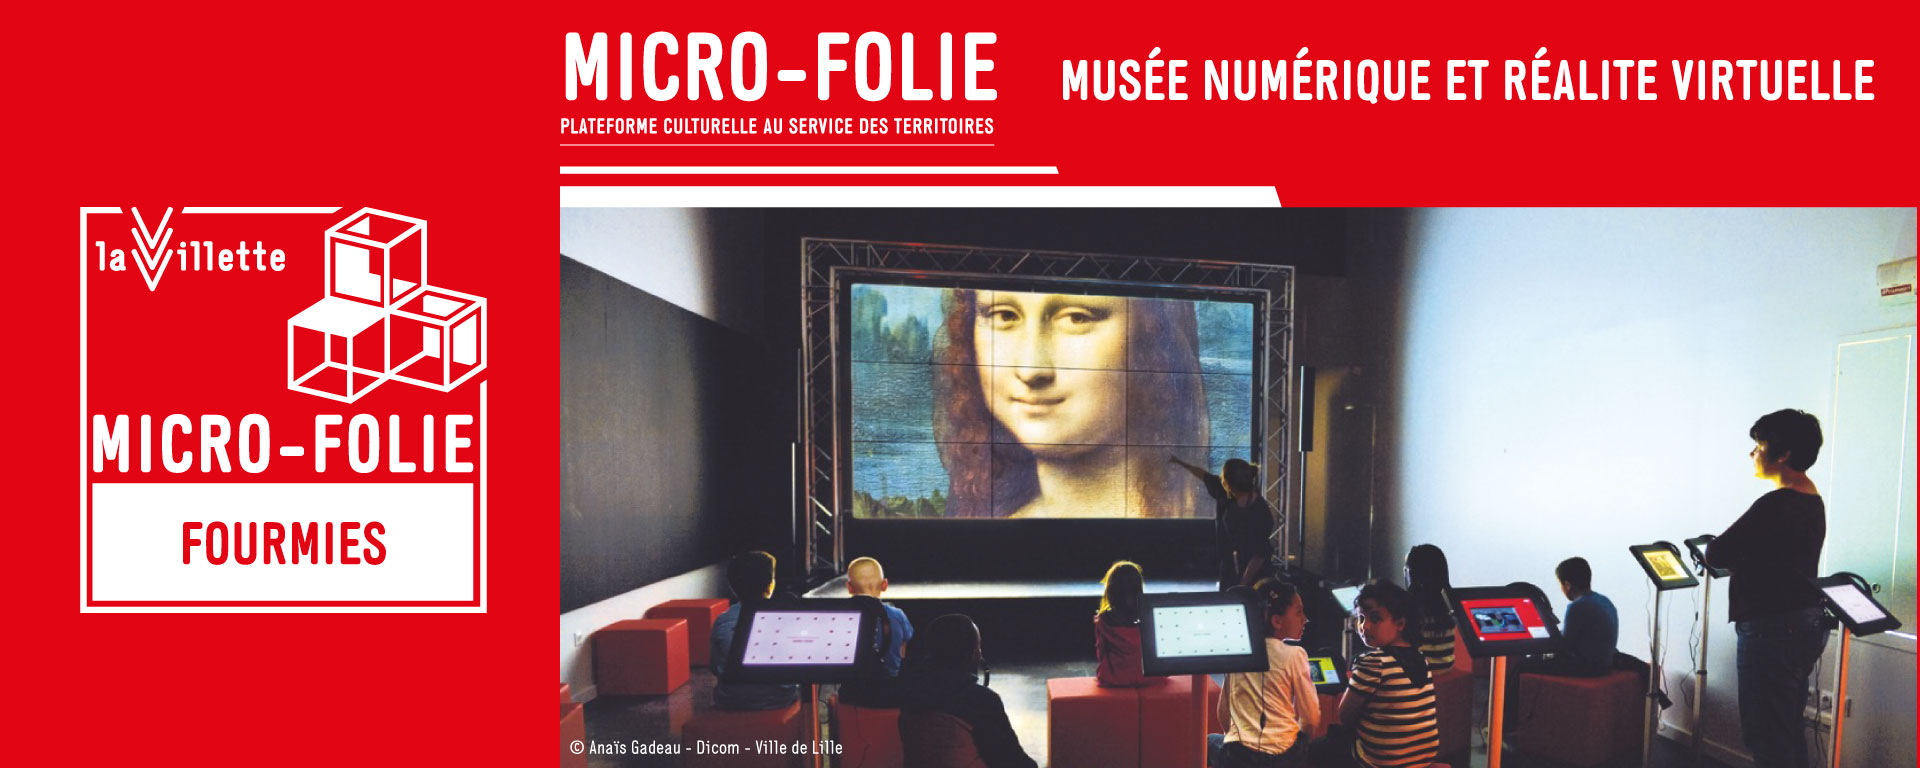 A Fourmies, le projet Micro-folie s’installera au cœur de la médiathèque Antoon Krings et permettra d’élargir l’offre culturelle en favorisant l’accès des grandes œuvres et œuvres emblématiques du patrimoine français au plus grand nombre.